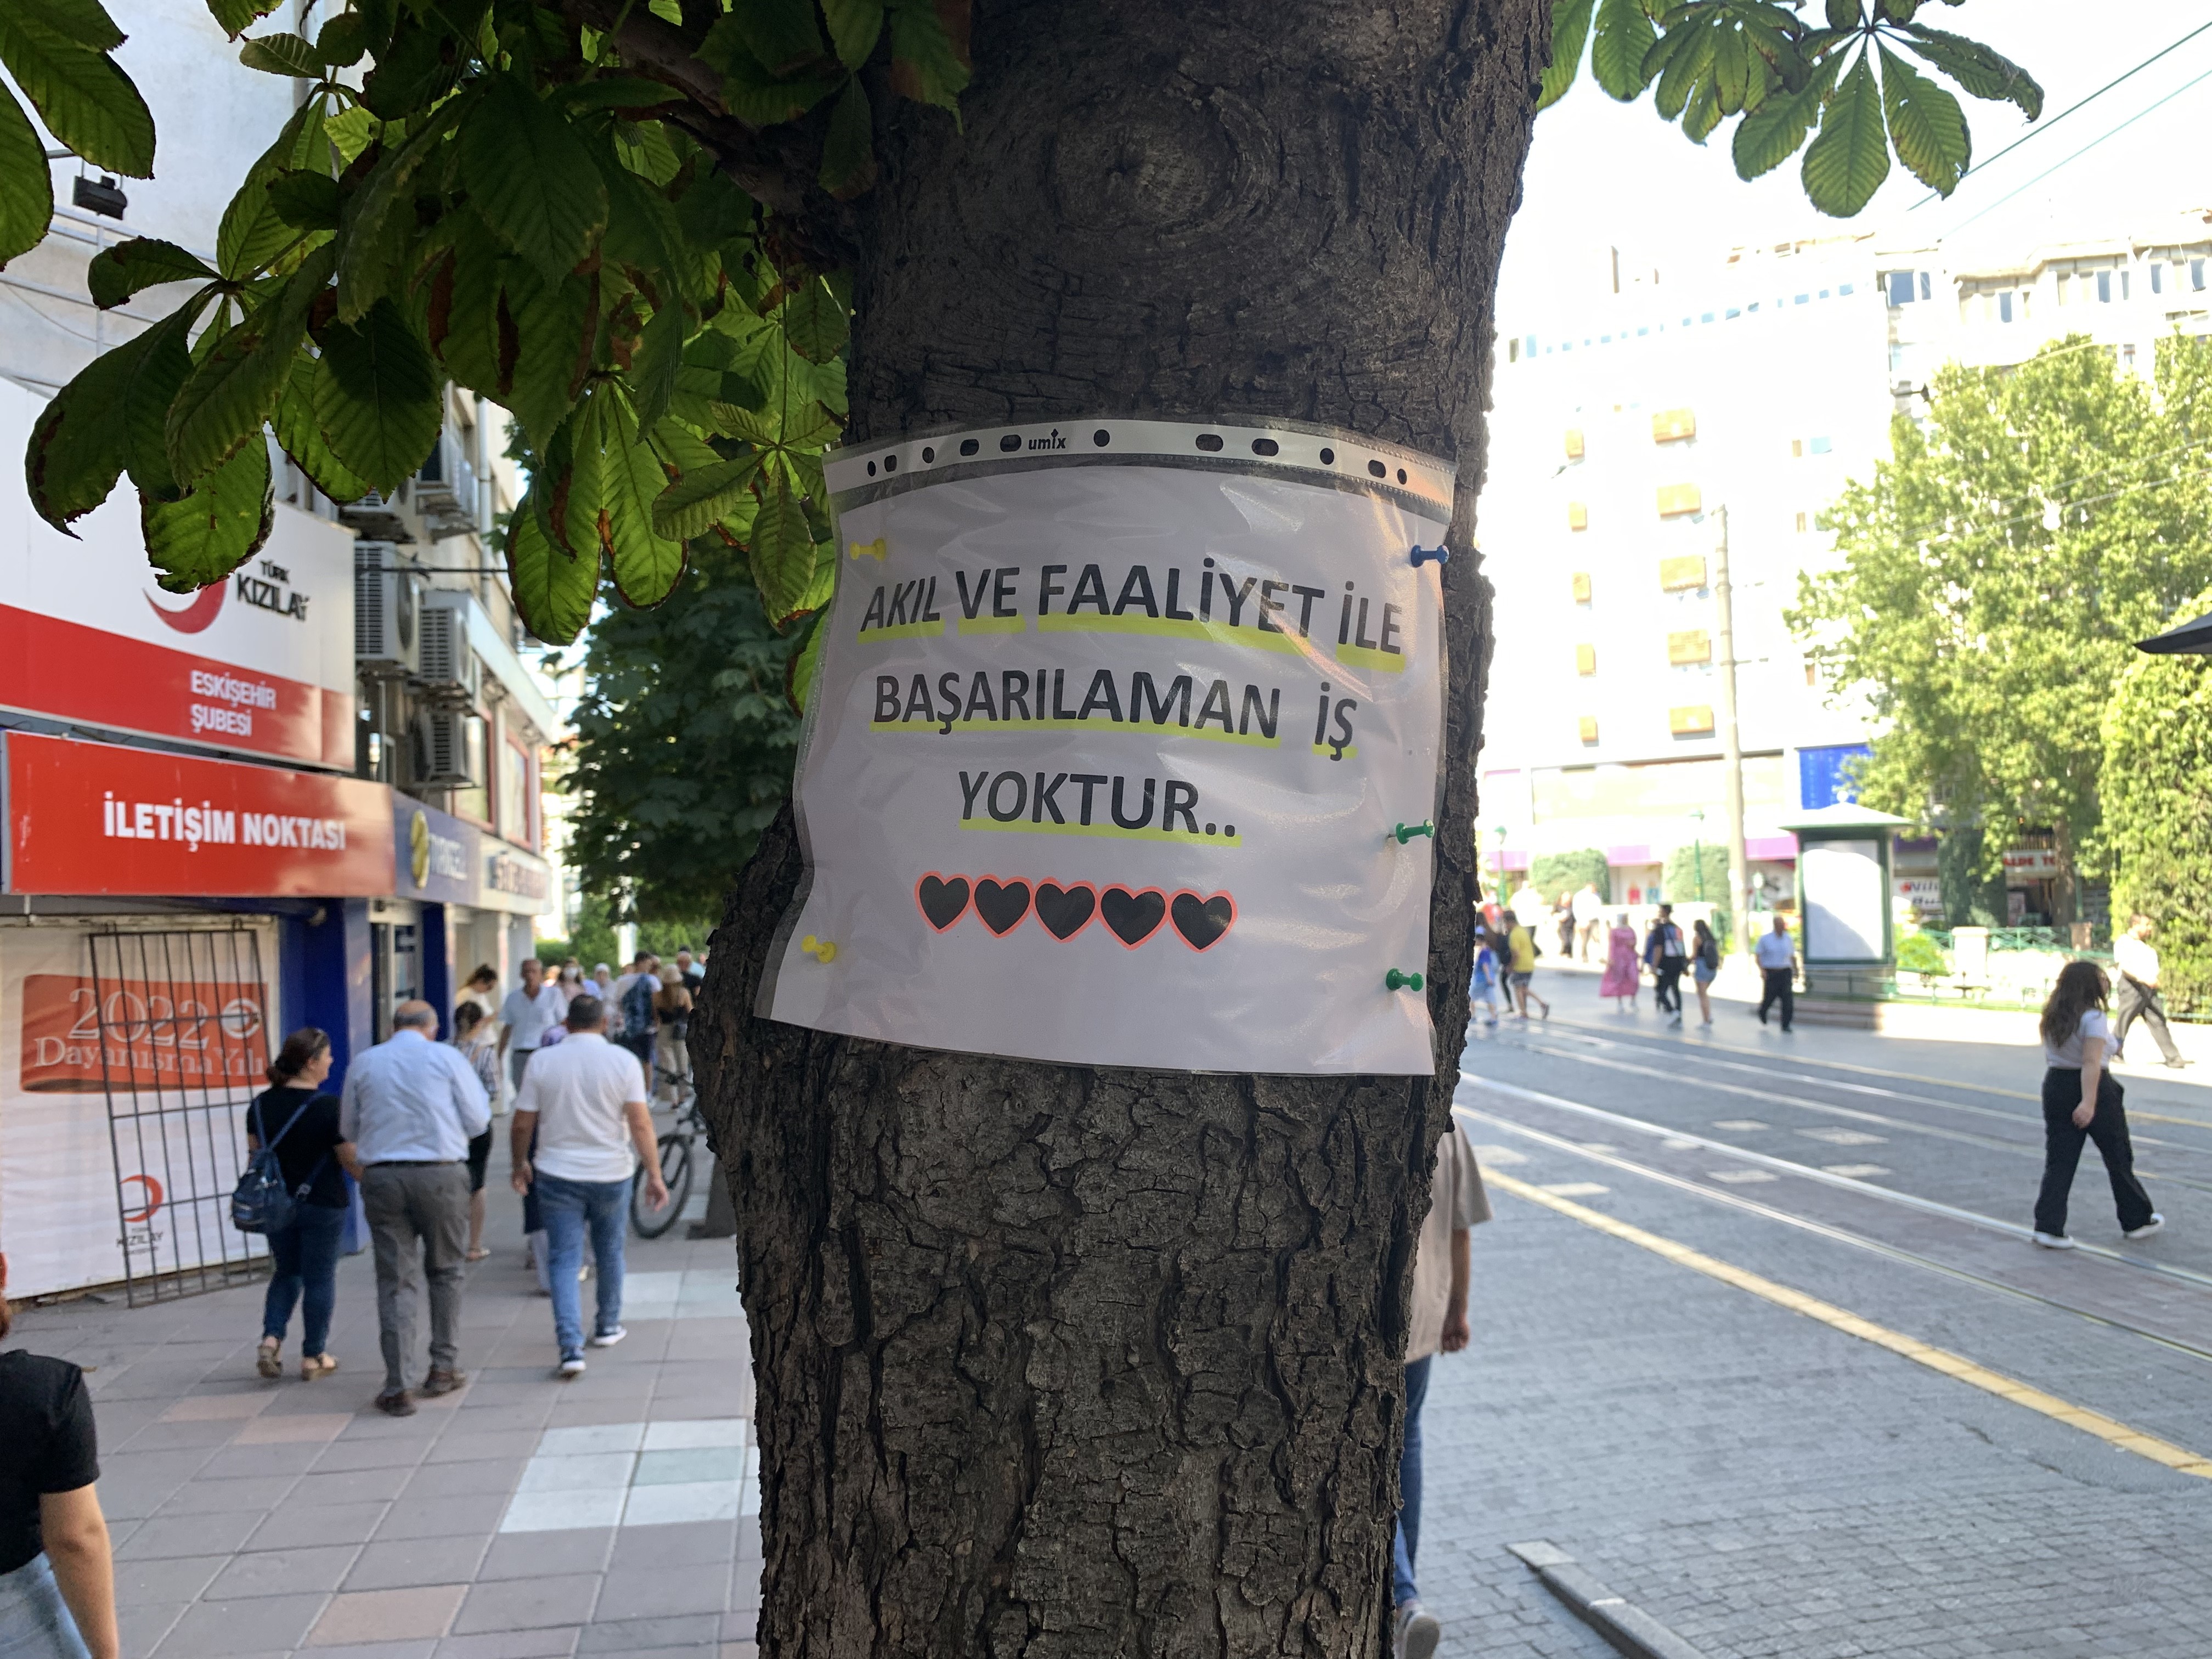 Eskişehir’de şehrin farklı bölgelerinde ağaçlara asılan notlara yazılan motivasyon sözleriyle, her insanın kendine güvenmesi gerektiğine vurgu yapıldı.